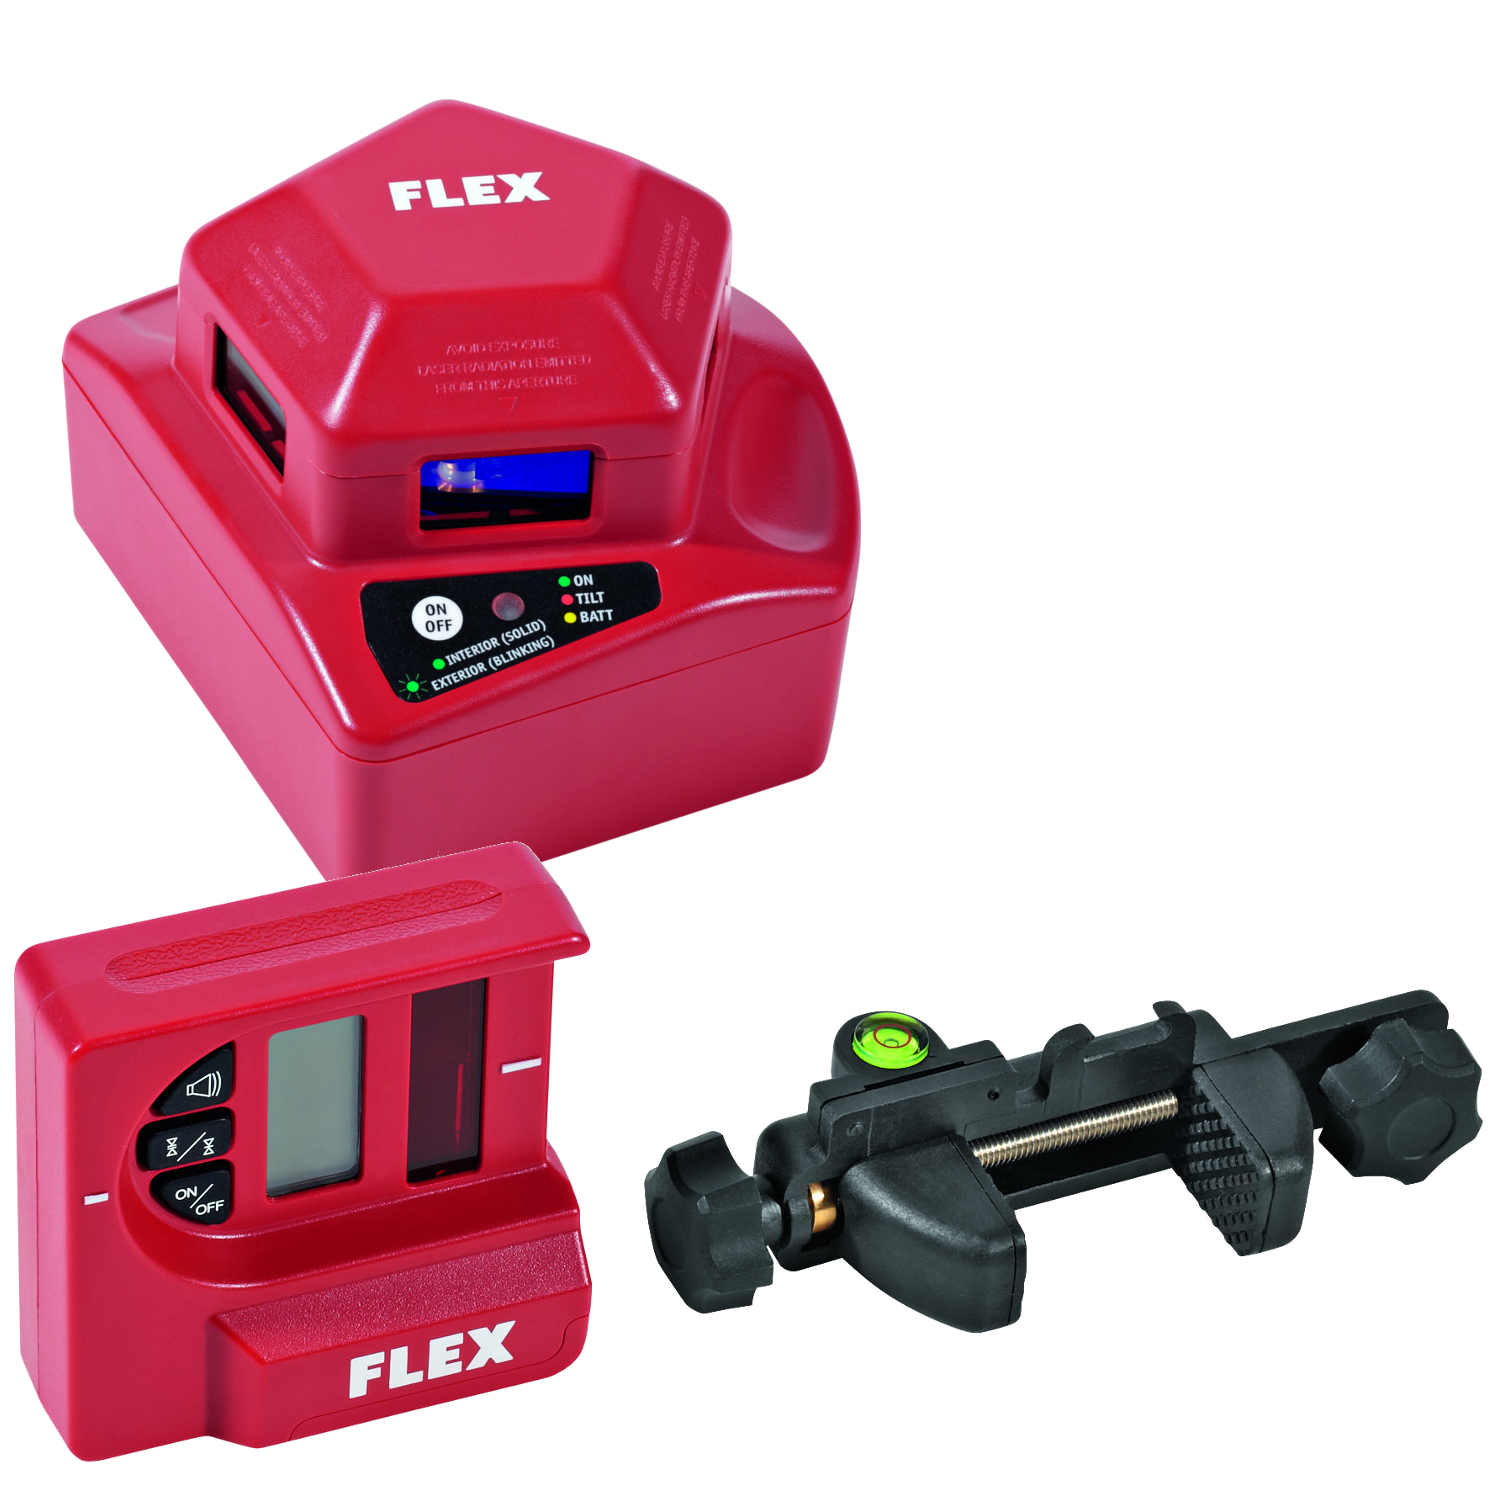 Flex ALC 1-360 Linienlaser mit LR1 Laser-Empfänger im Set